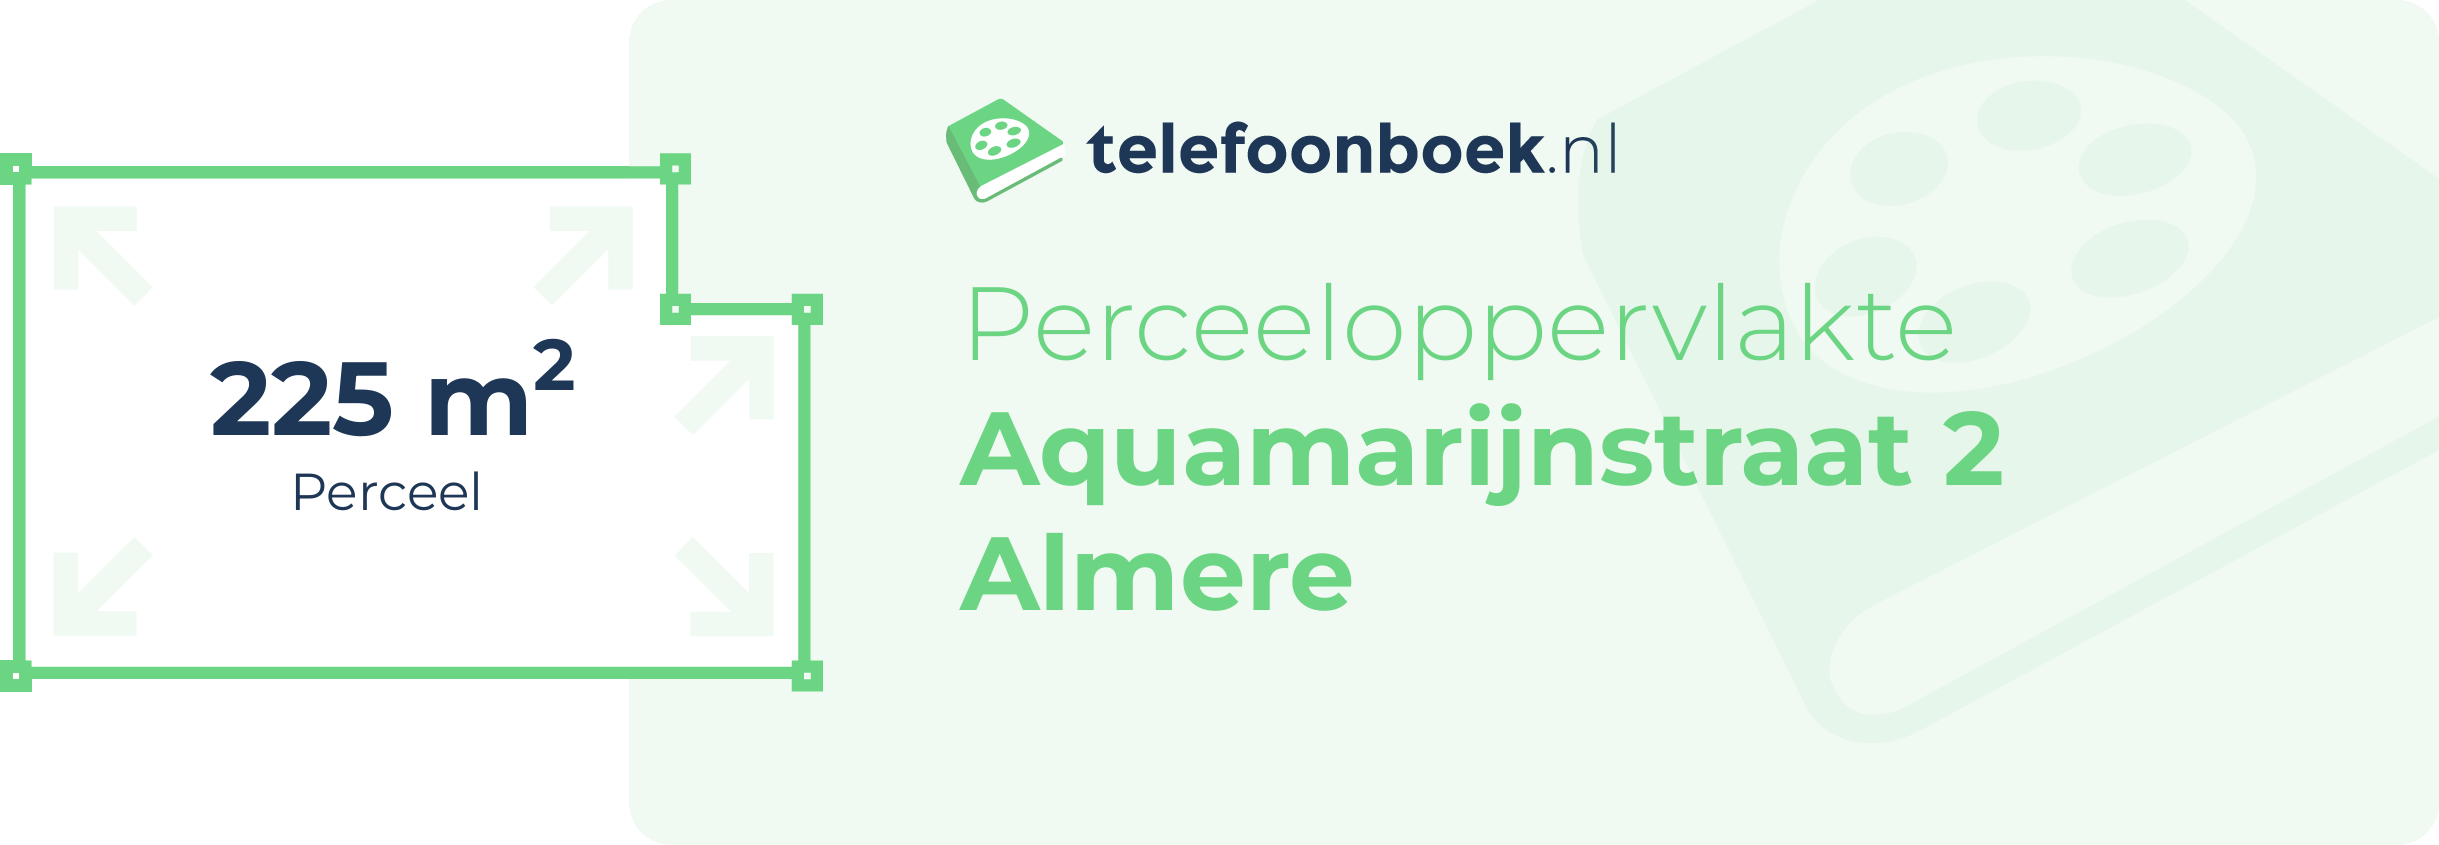 Perceeloppervlakte Aquamarijnstraat 2 Almere